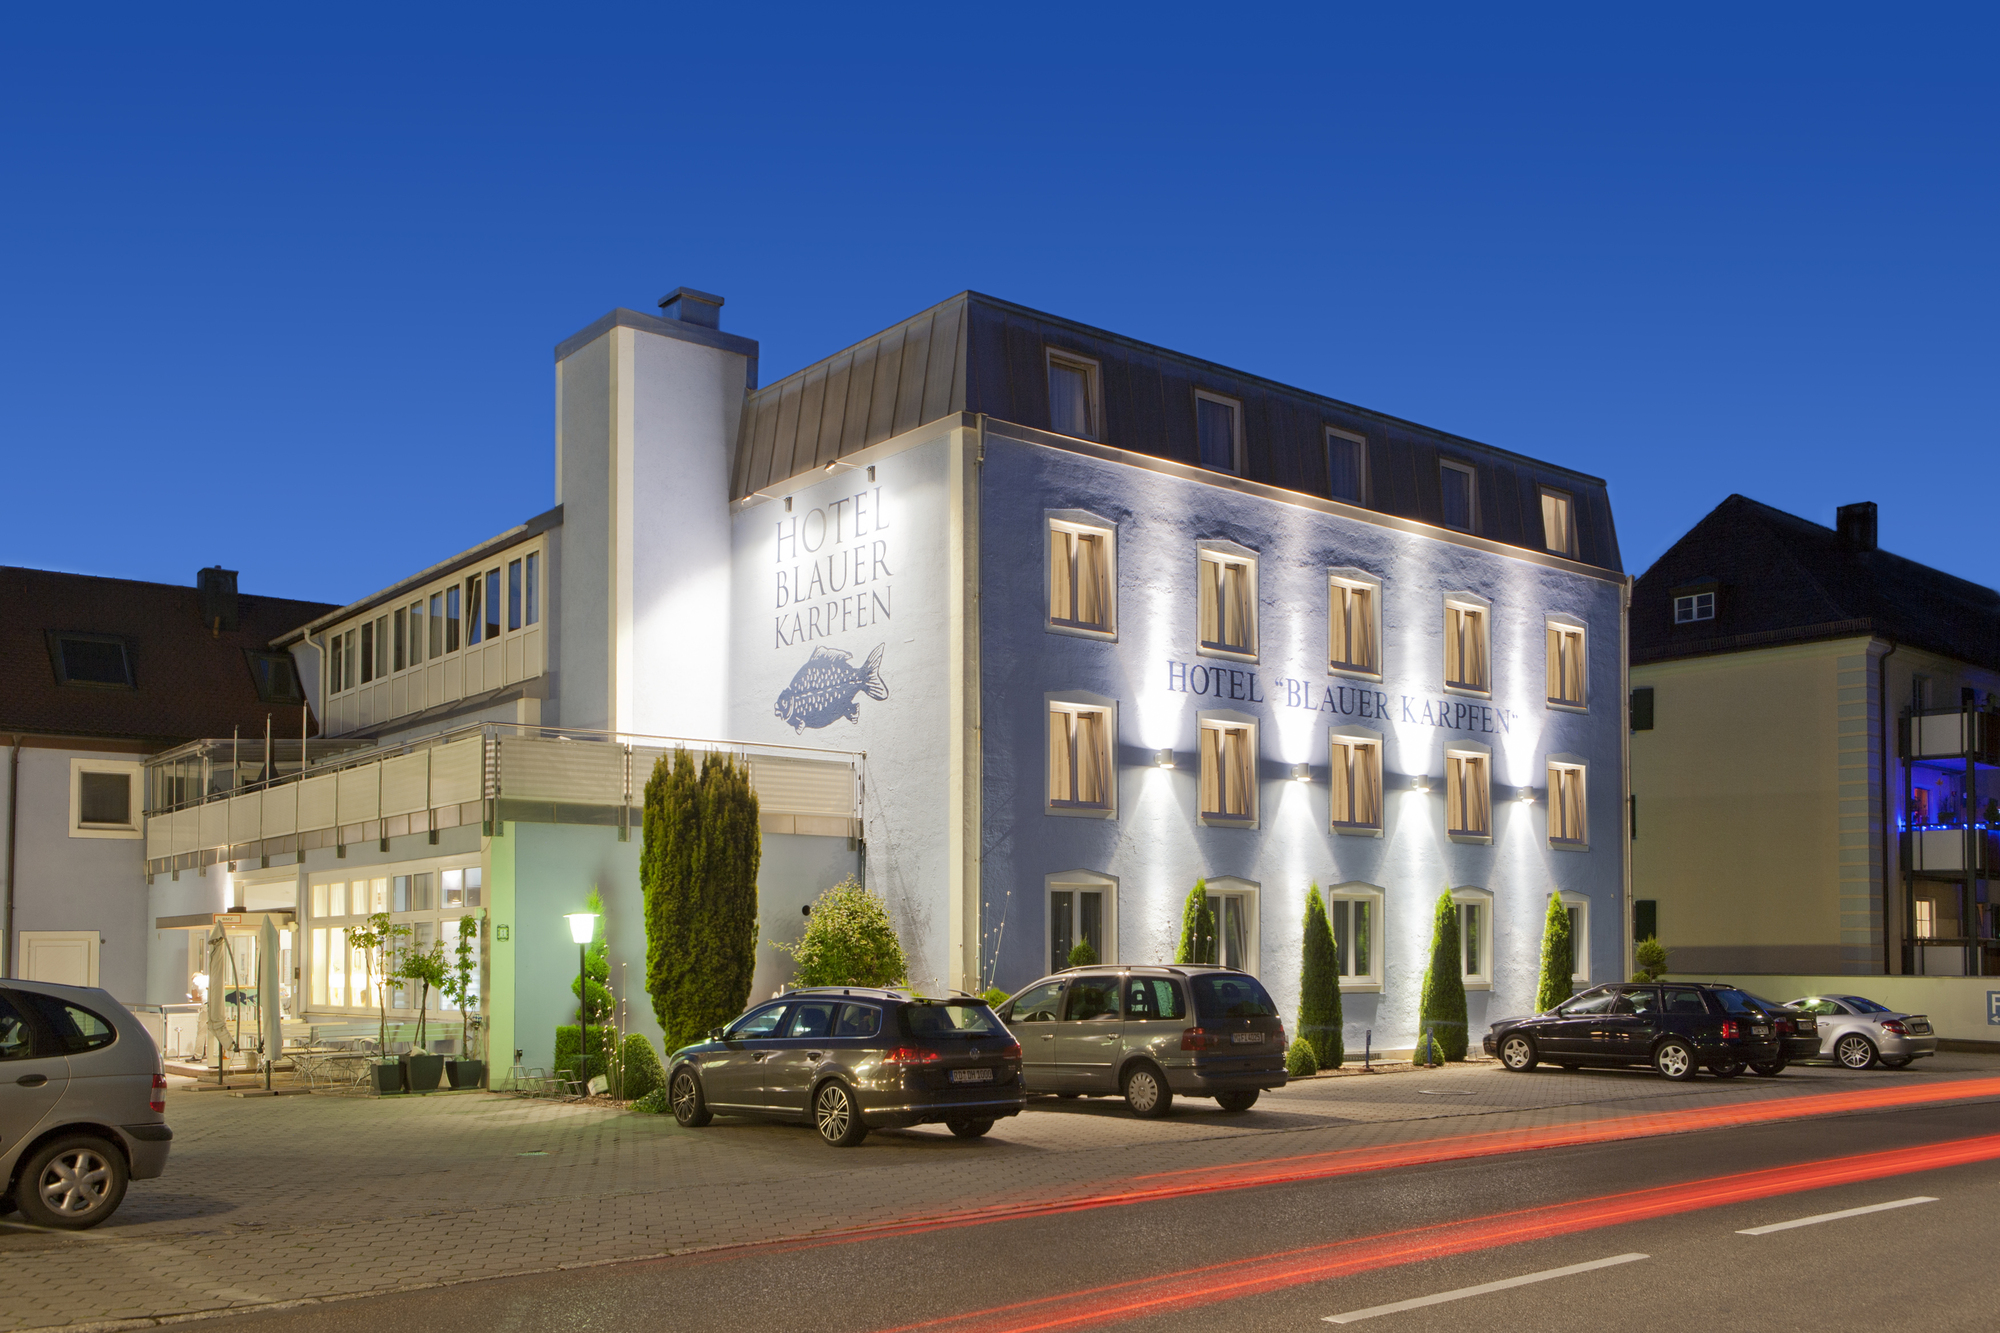 Das Paula Hartmann Konzert Hotel blauer Karpfen, Oberschleißheim bei München